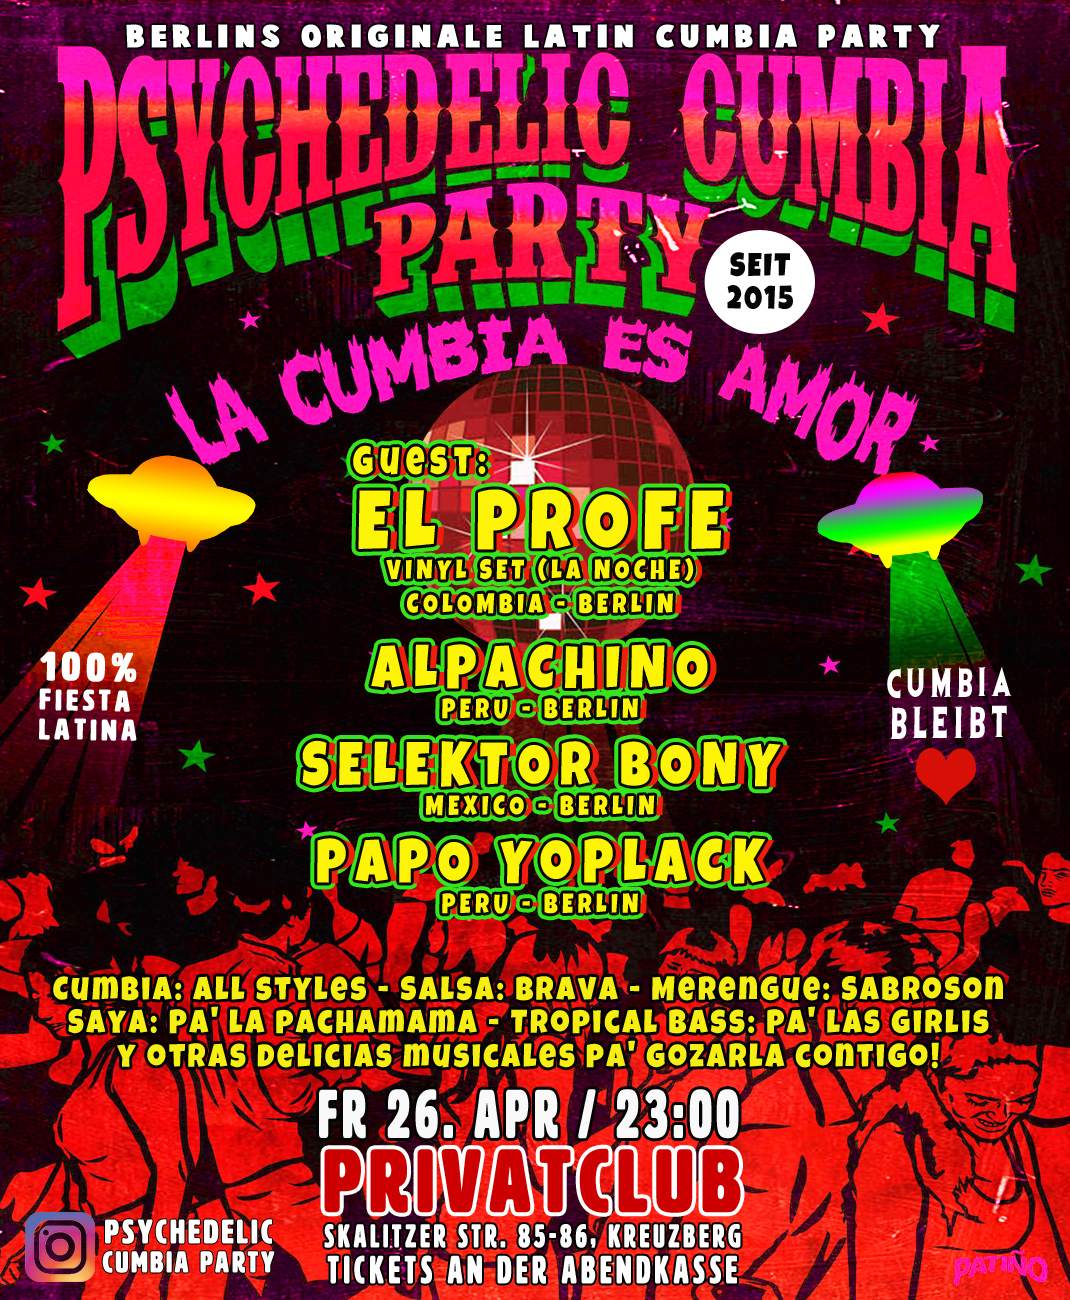 Psychedelic Cumbia Party - La cumbia es amor - - Página frontal